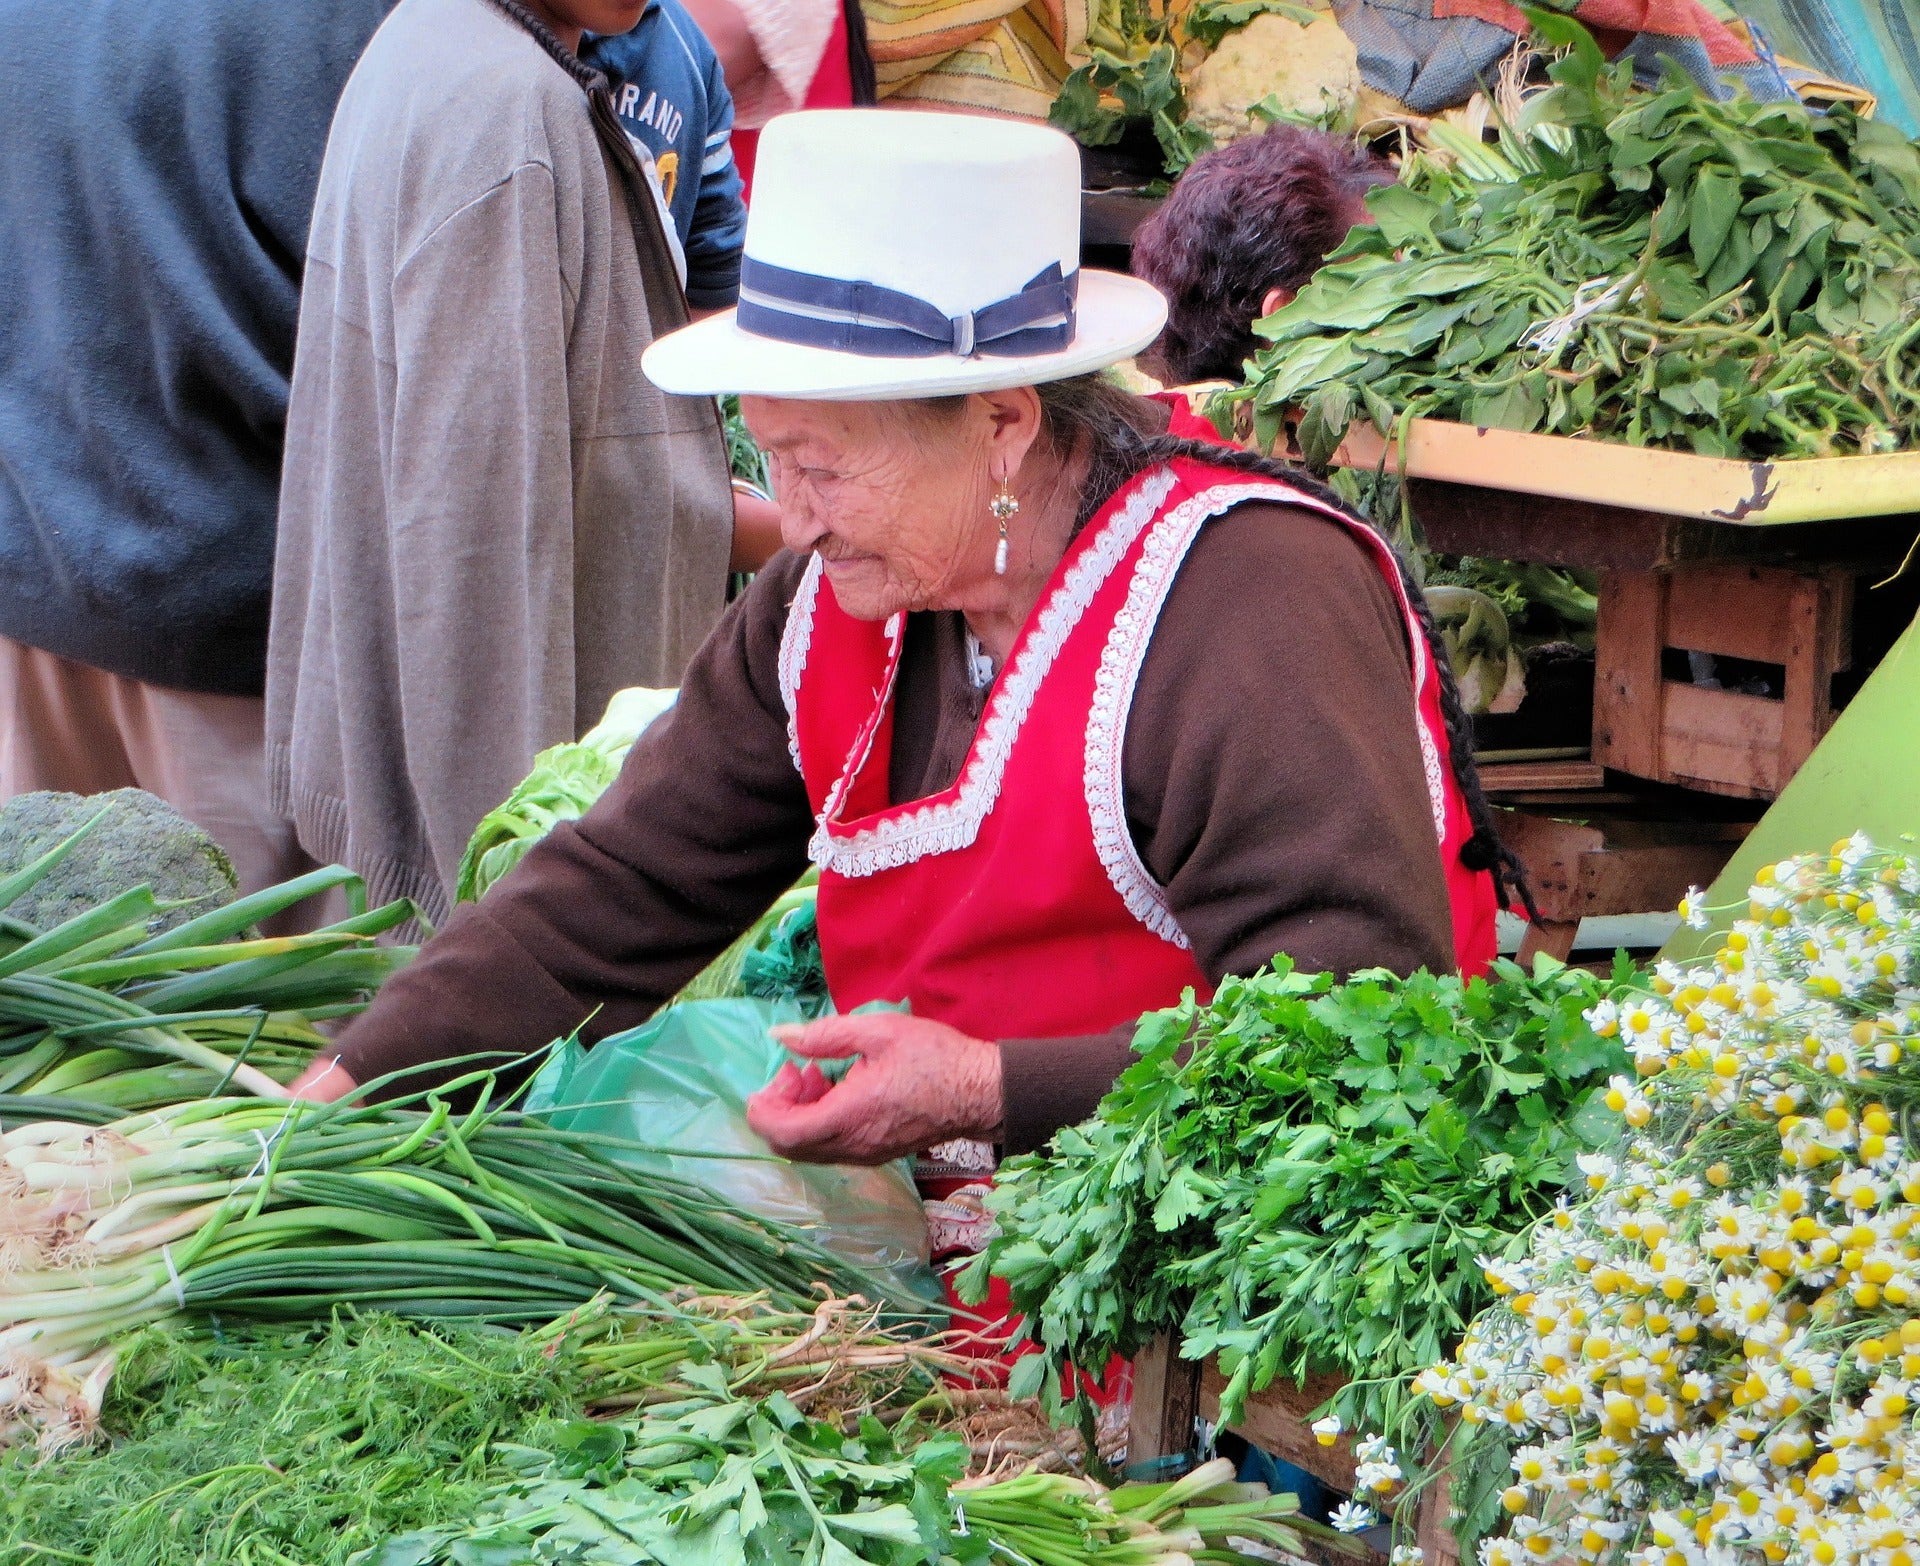 Woman at market